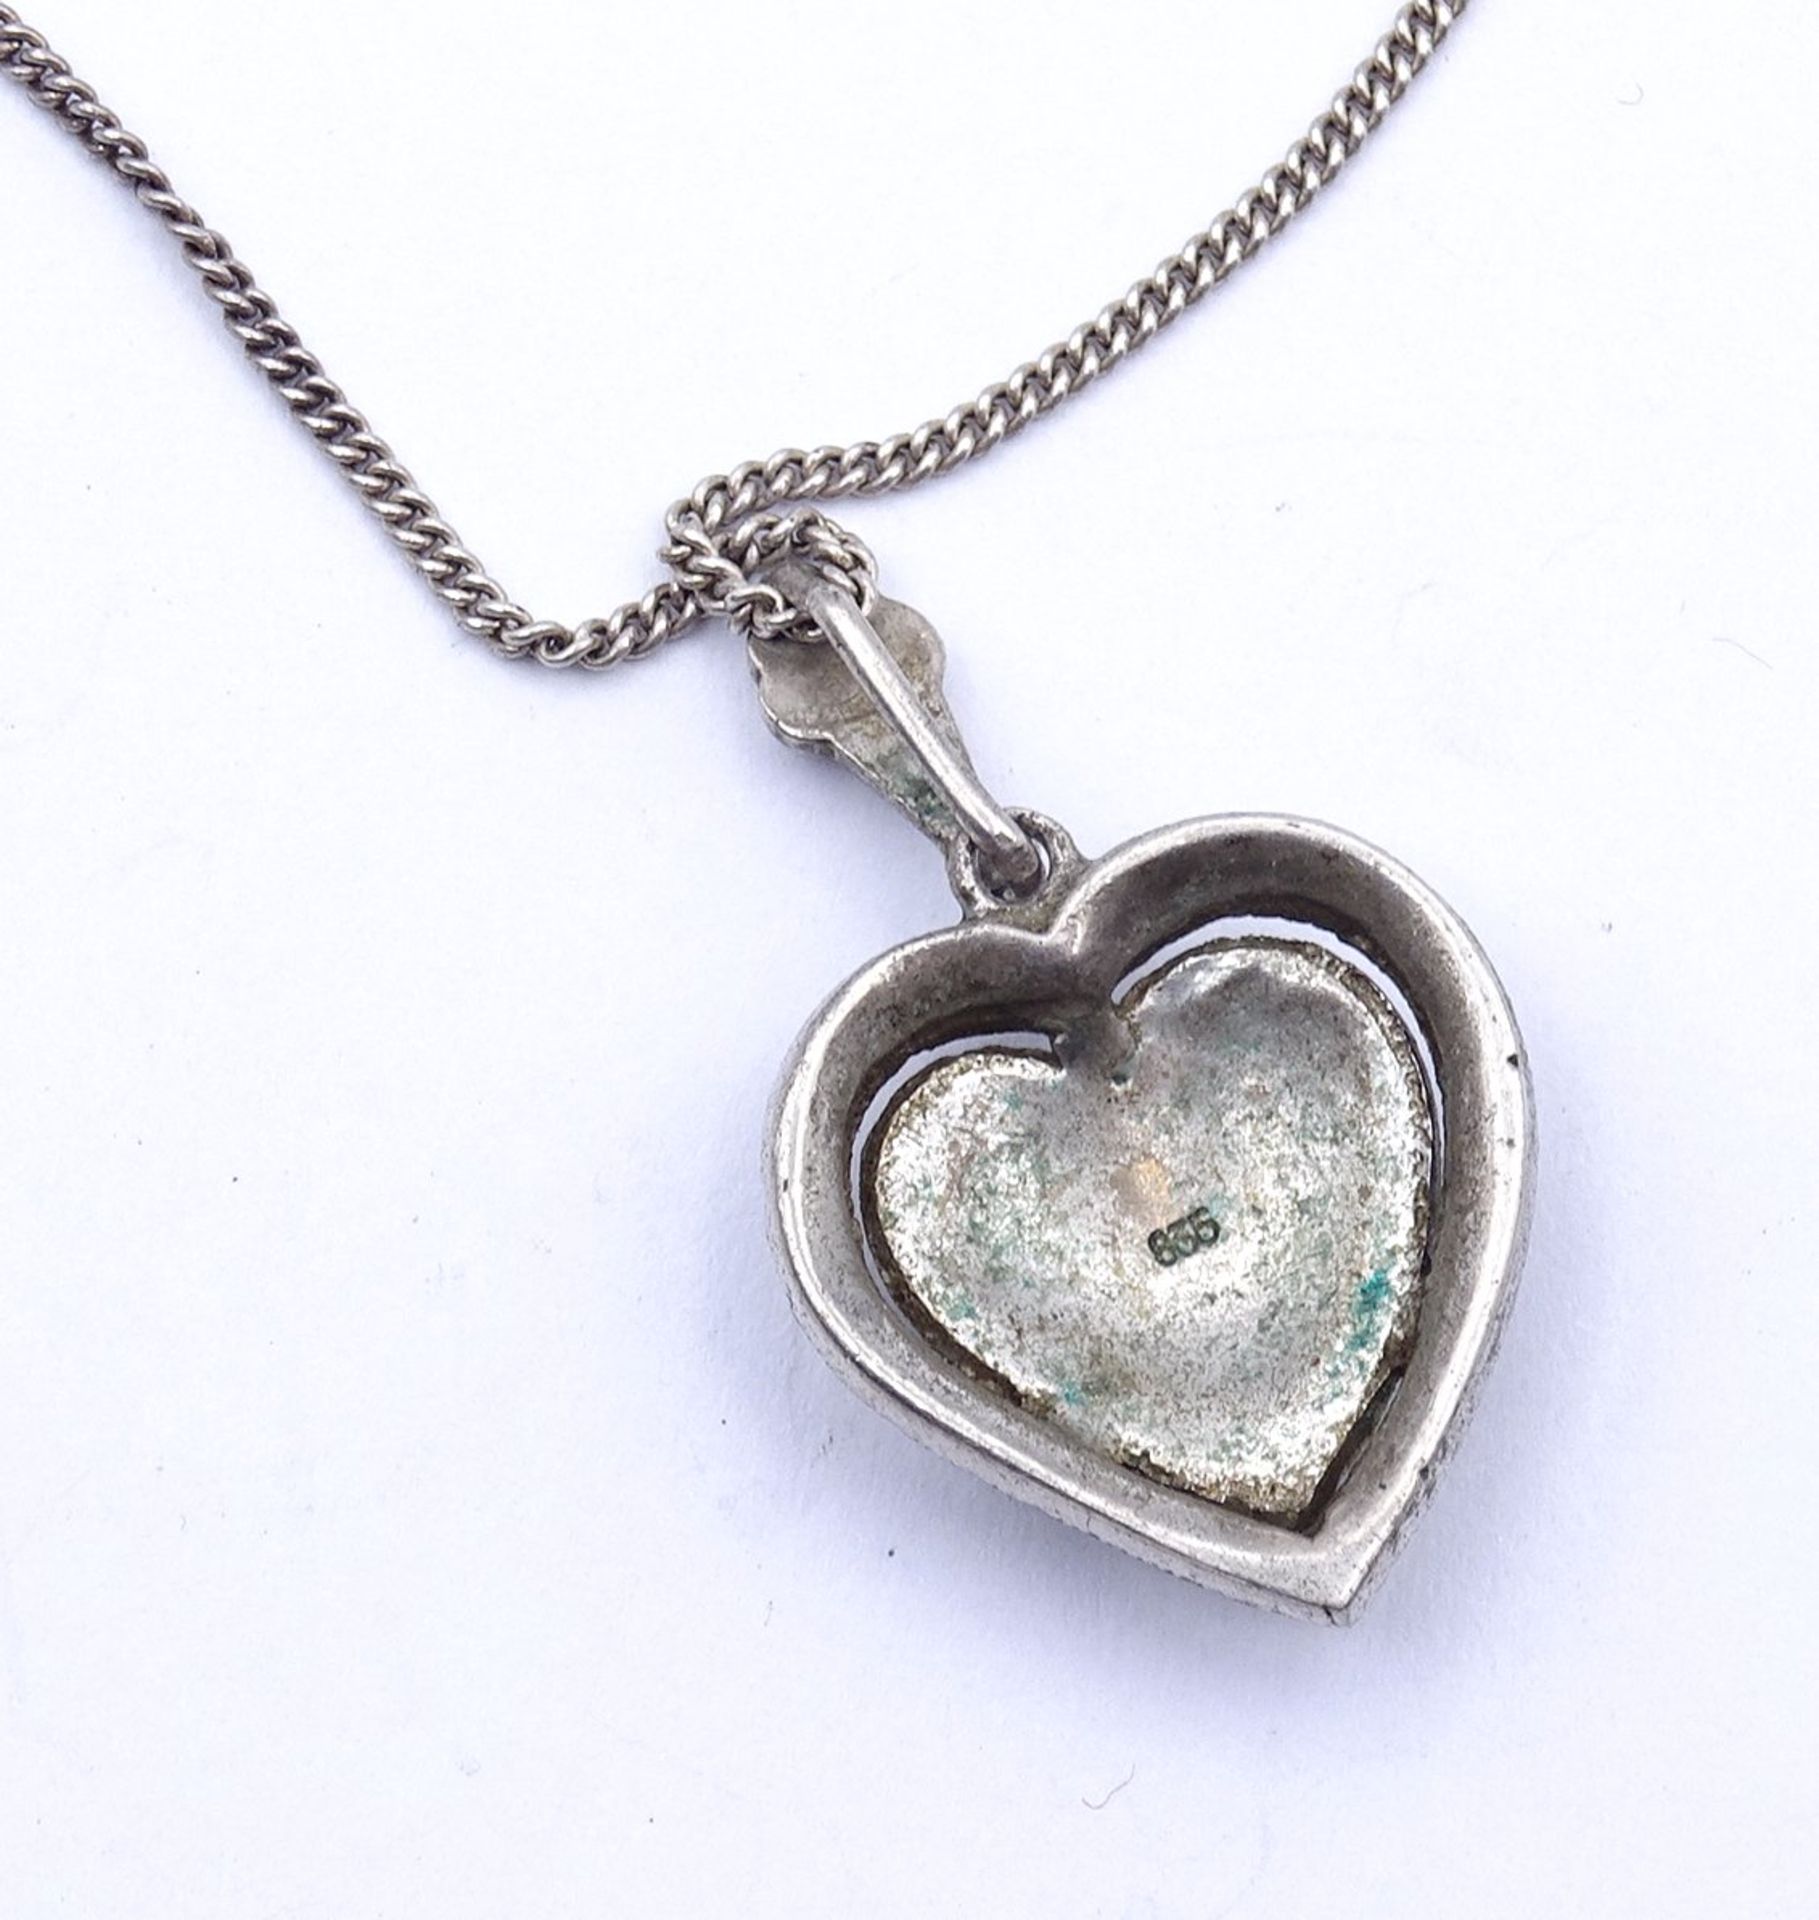 Halskette mit Markasiten Herz Anhänger, Silber 0.835, Kette L. 51cm, zus. 5,4g. - Bild 4 aus 4